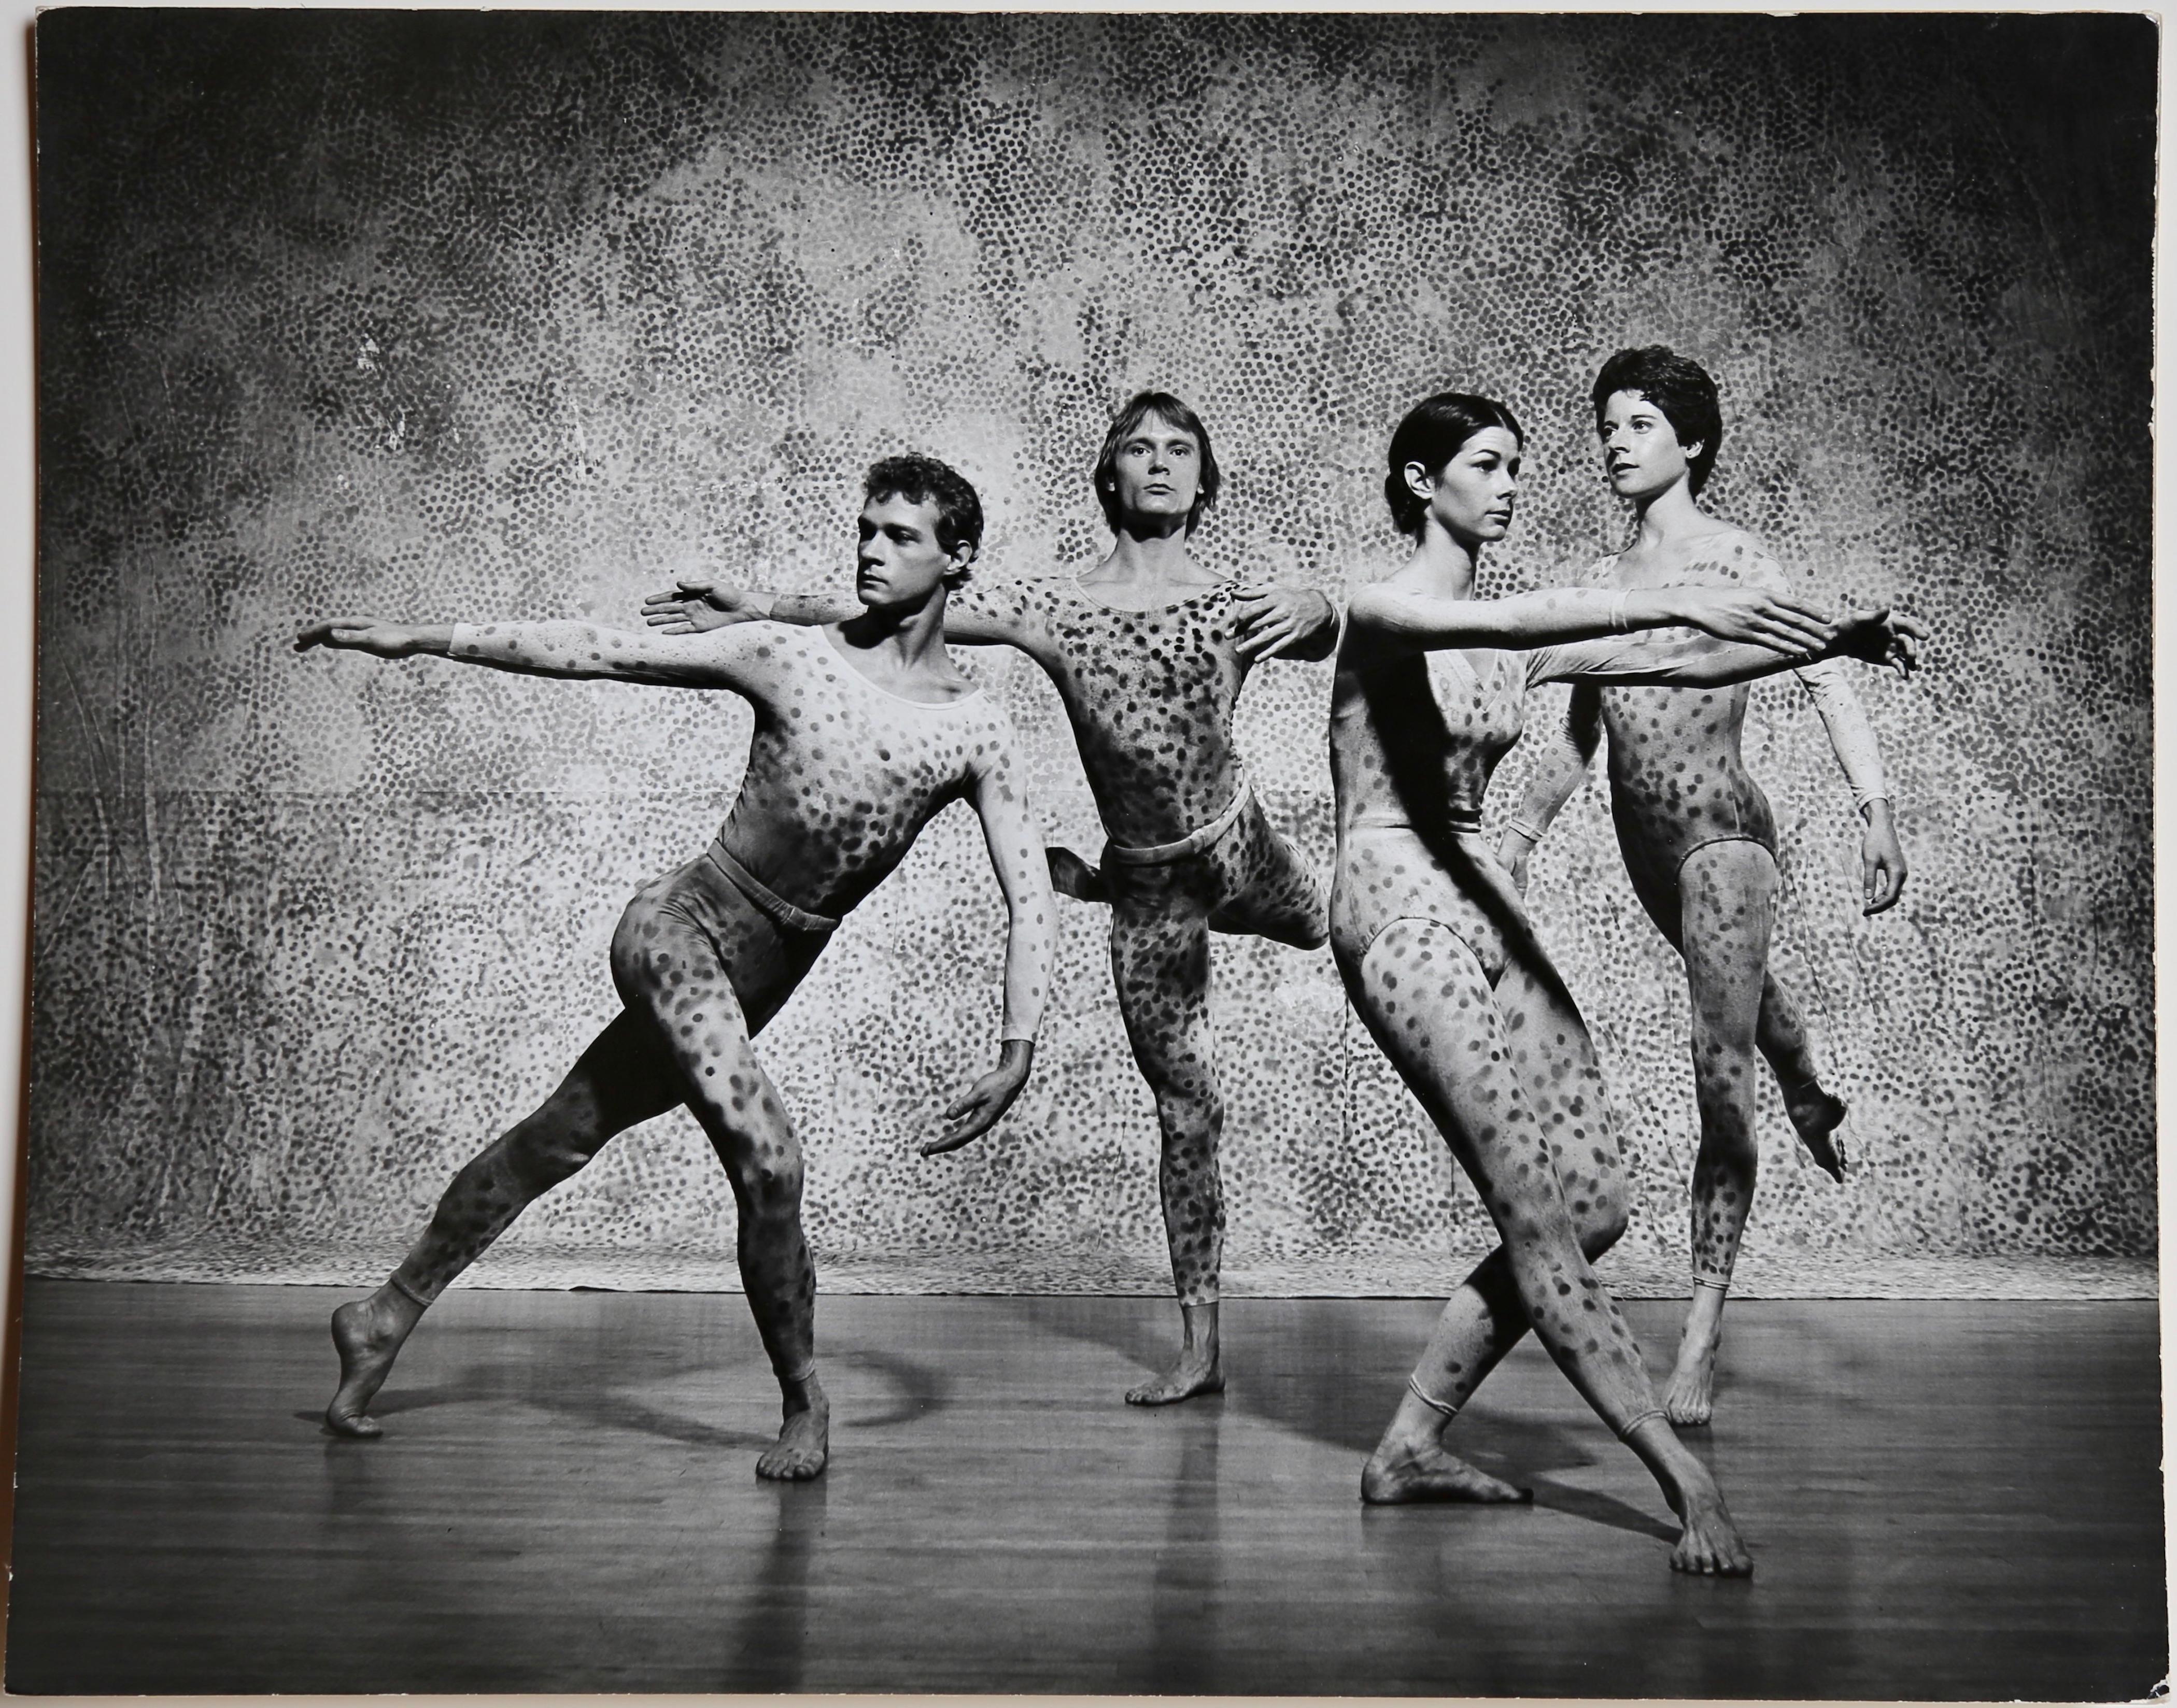 Photographie vintage du milieu du 20e siècle signée Jack Mitchell de la Mere Cunningham Dance Company dans "Summerspace" de l'emblématique chorégraphe de danse moderne Merce Cunningham. "Summerscape" est l'un des ballets emblématiques de Cunningham.